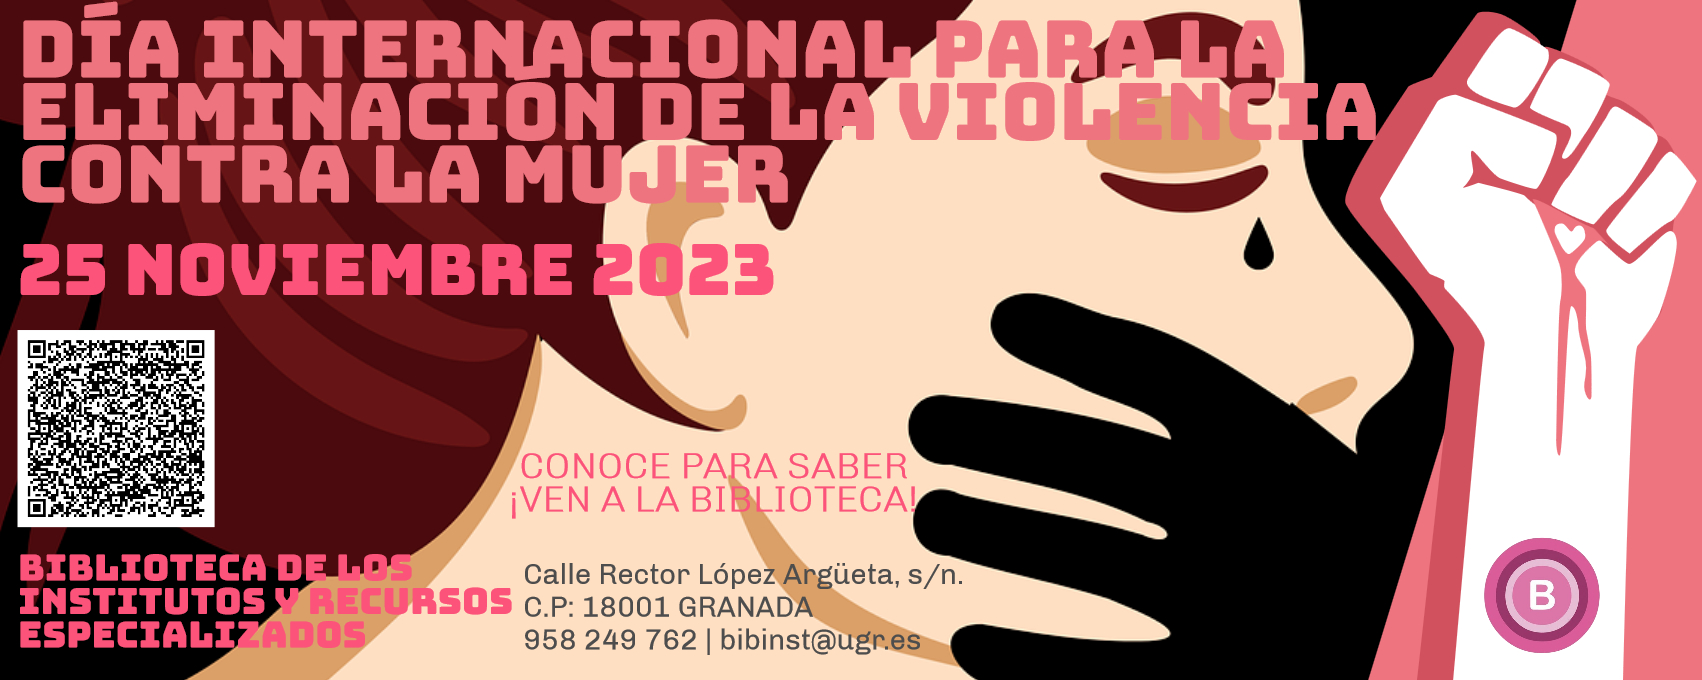 Día Internacional para la Eliminación de la Violencia contra la Mujer